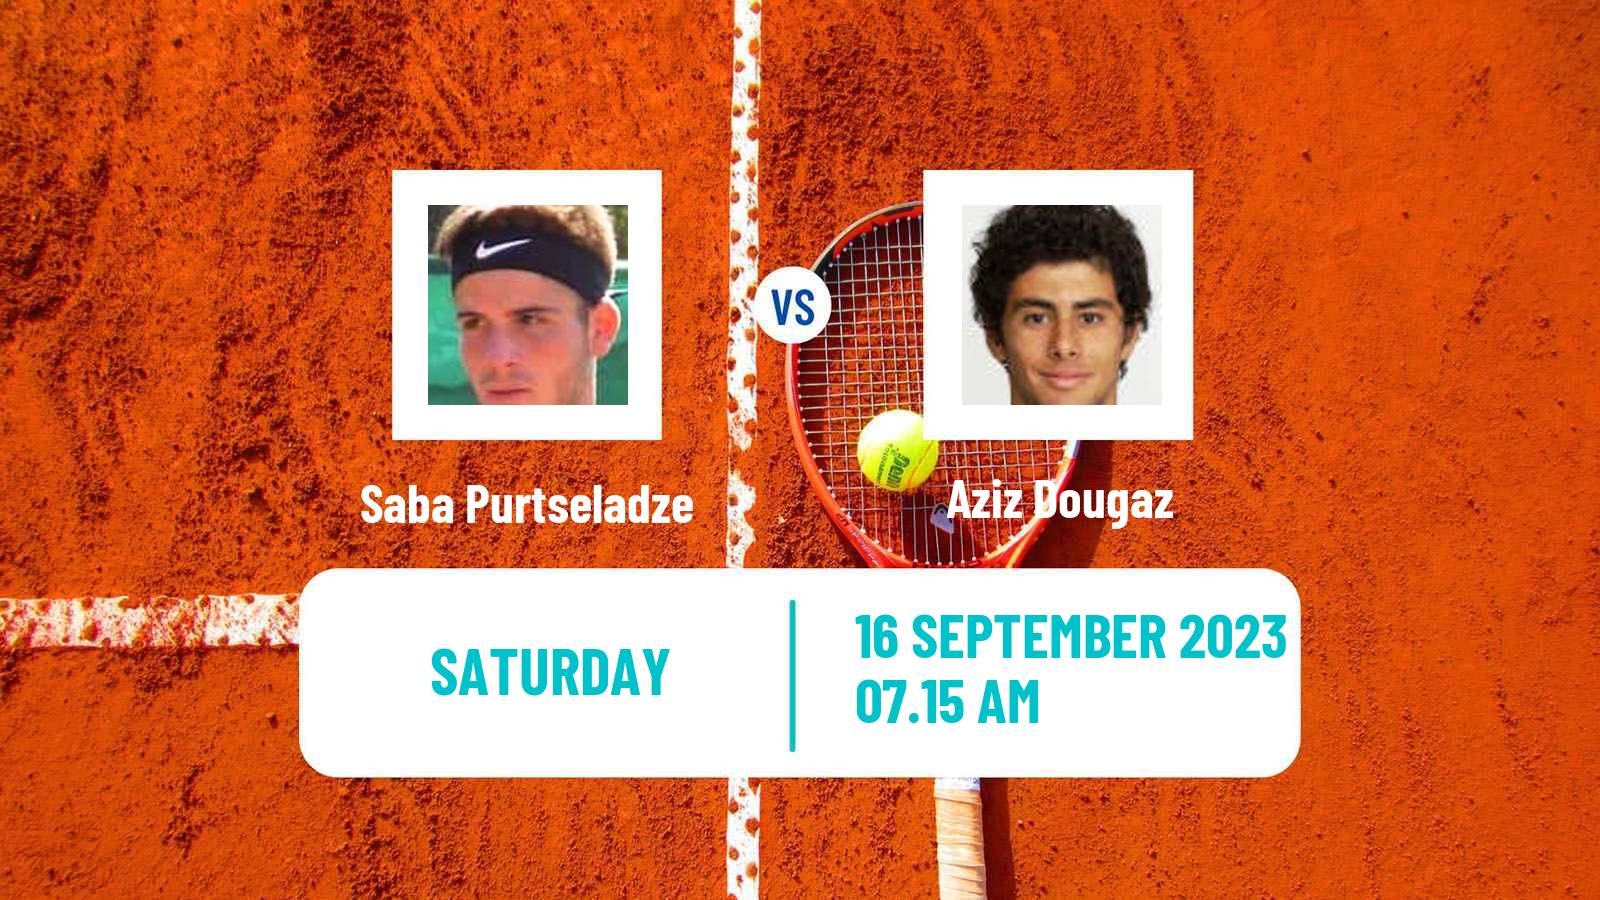 Tennis Davis Cup World Group II Saba Purtseladze - Aziz Dougaz